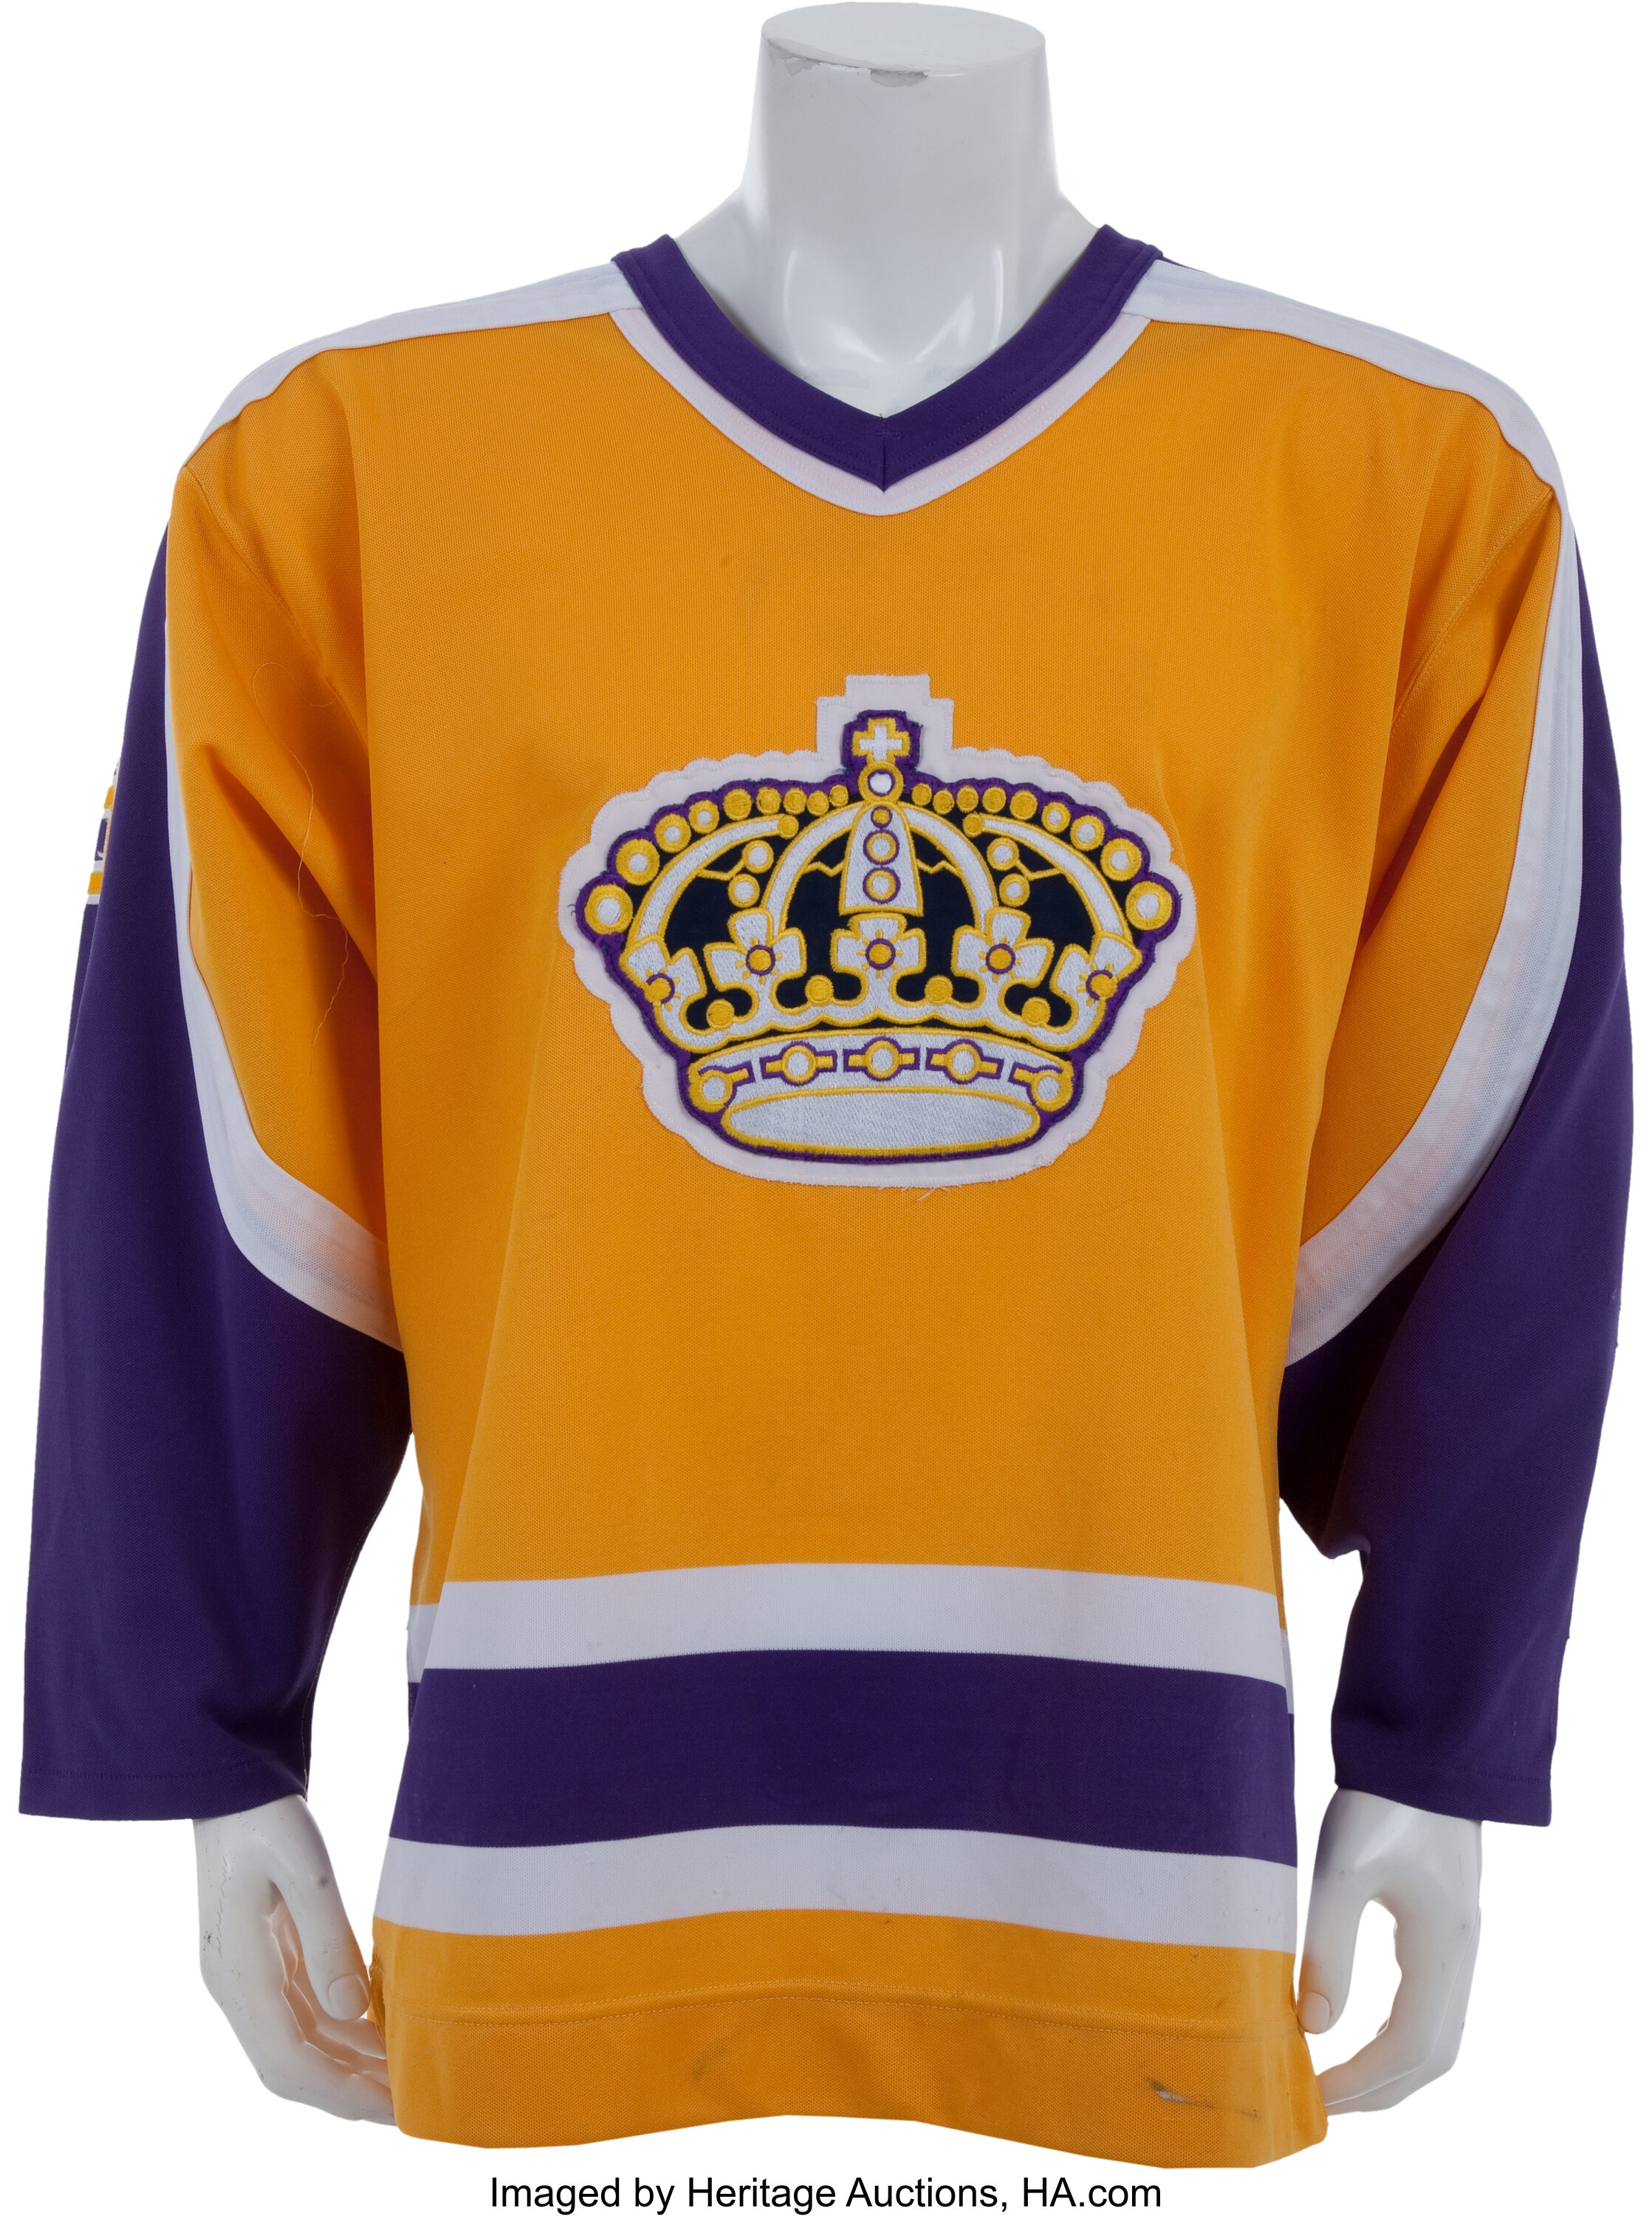 Kings reveal 50th anniversary jerseys - LA Kings Insider